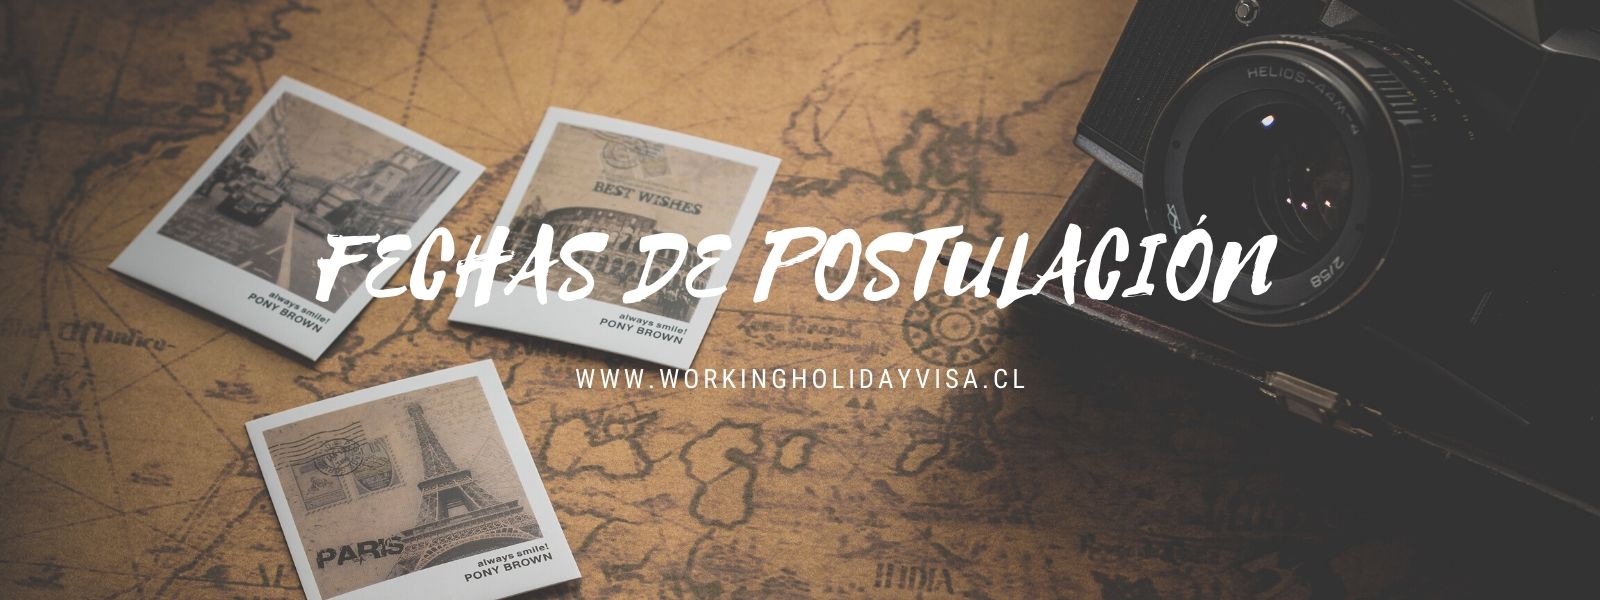 FECHAS DE POSTULACIÓN Working Holiday Visa en REPUBLICA CHECA